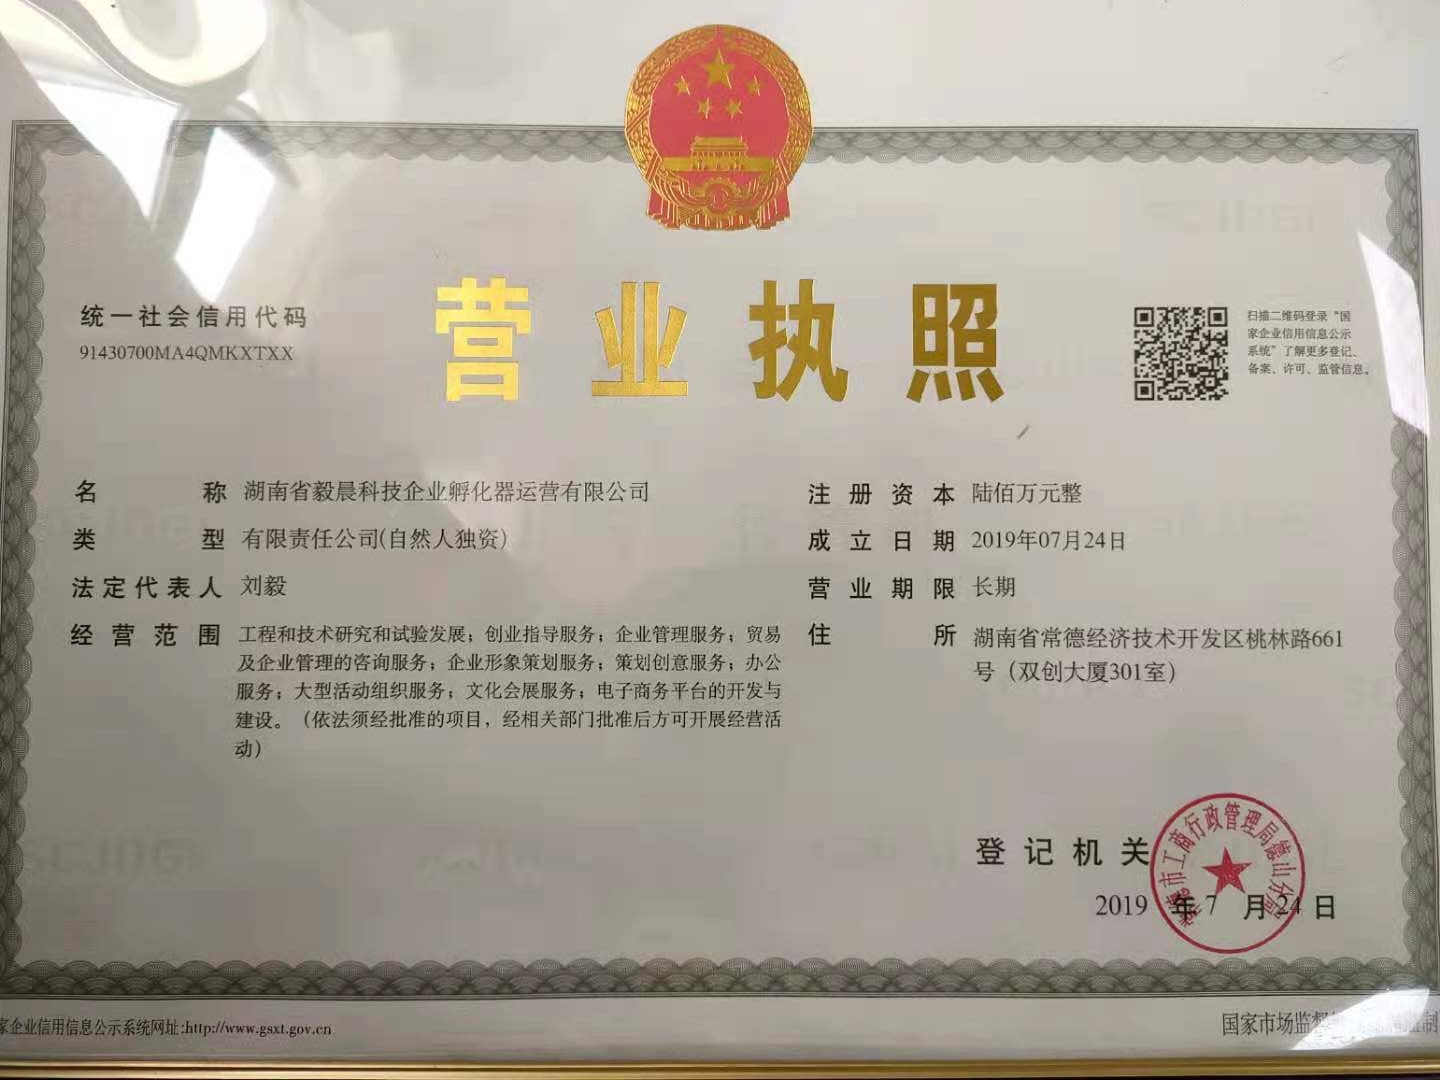 湖南省毅晨科技企业孵化器运营有限公司